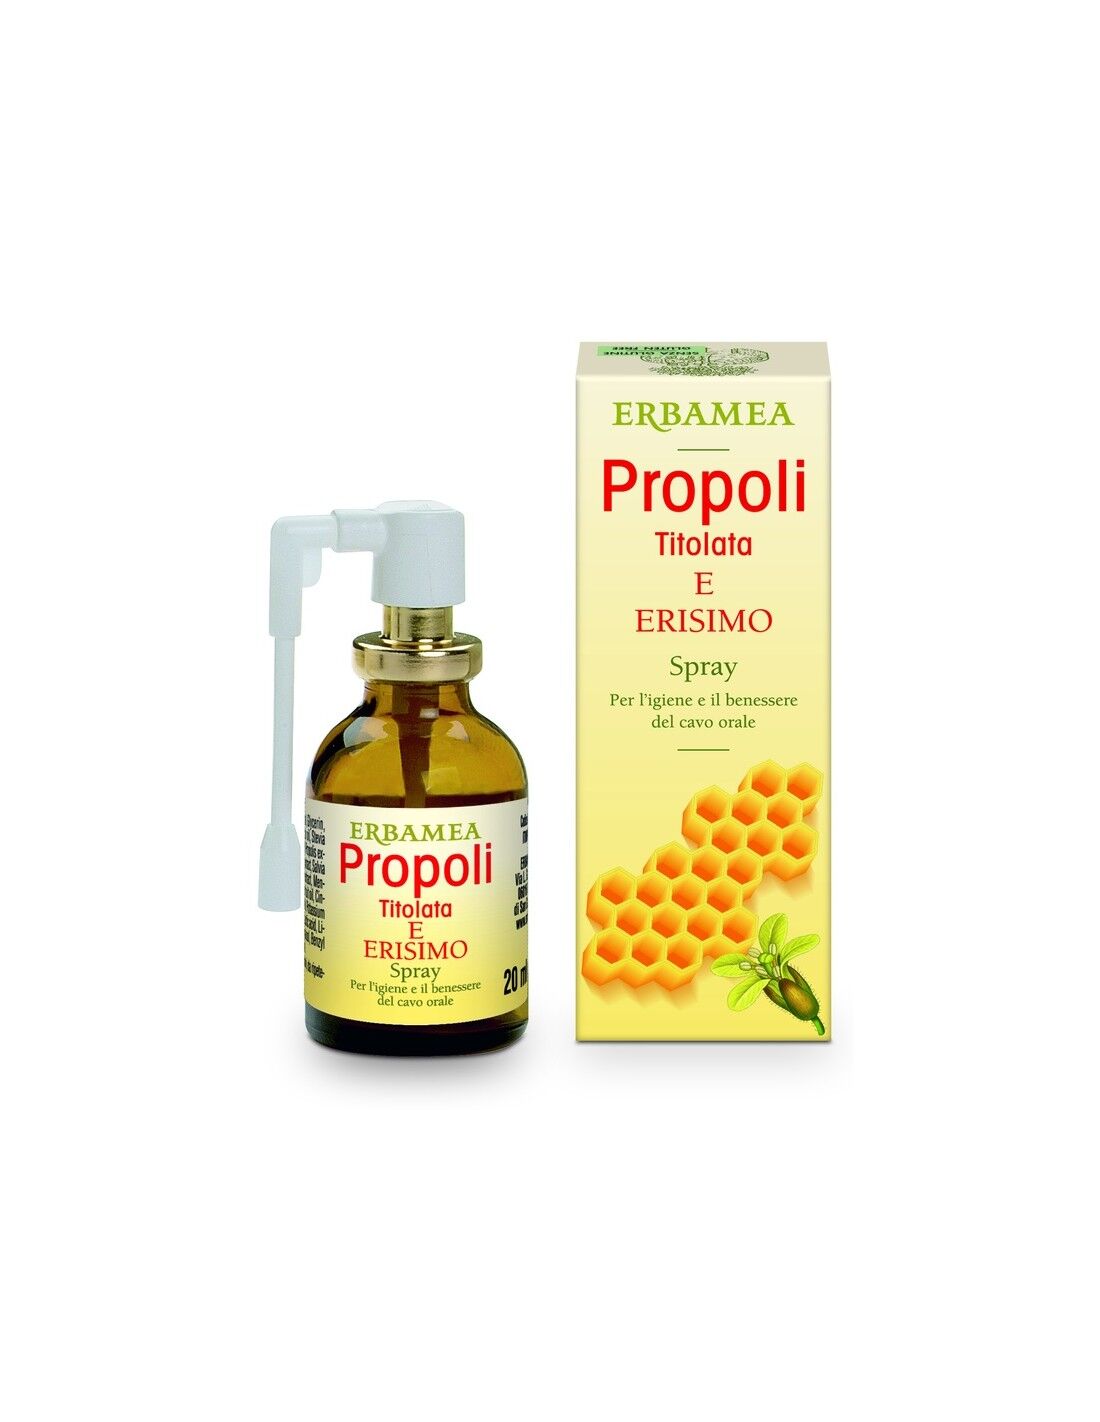 Erbamea Srl Propoli Titolata ed Erisimo - Spray per l'Igiene e il Benessere del Cavo Orale 20 ml - Marca PropolWell